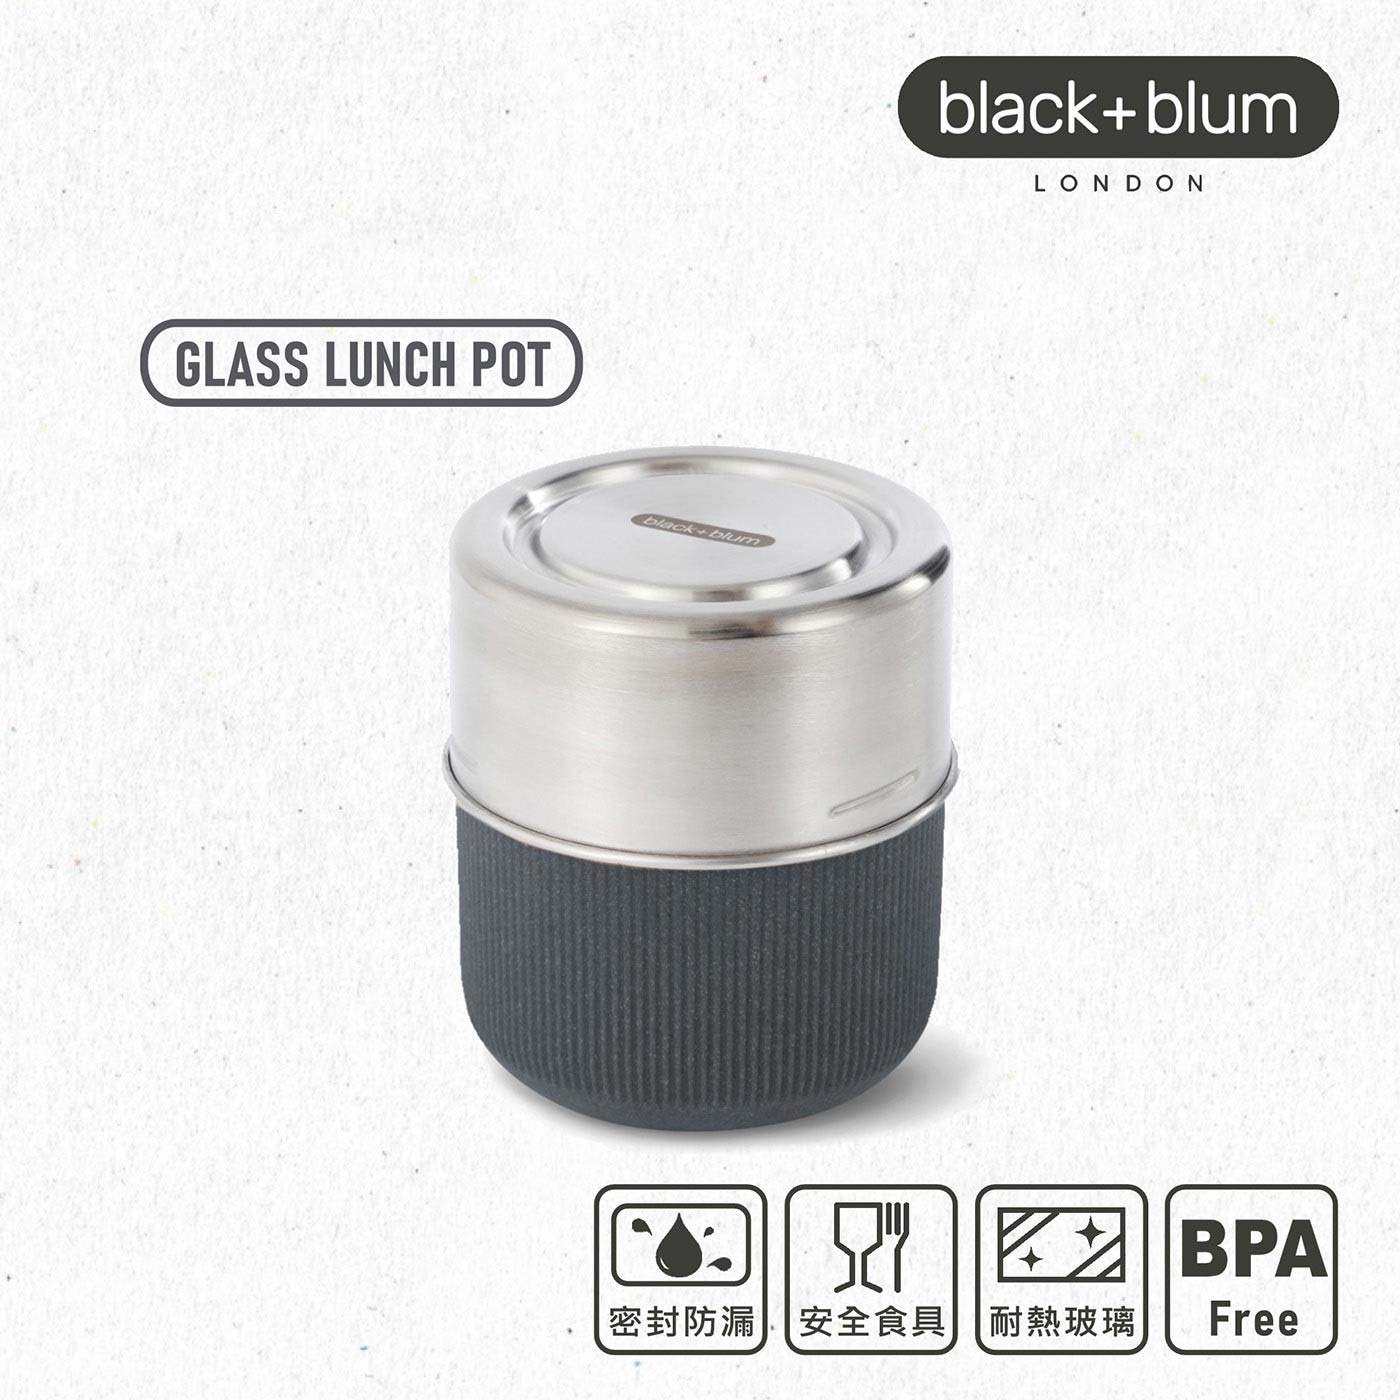 英國black+blum滿意玻璃罐450毫升-錫器灰 含防漏矽膠蓋，耐熱玻璃罐身，輕便耐熱，使用便利，隔熱專用護套，安全防護，拿取不燙手，可蒸煮及微波。